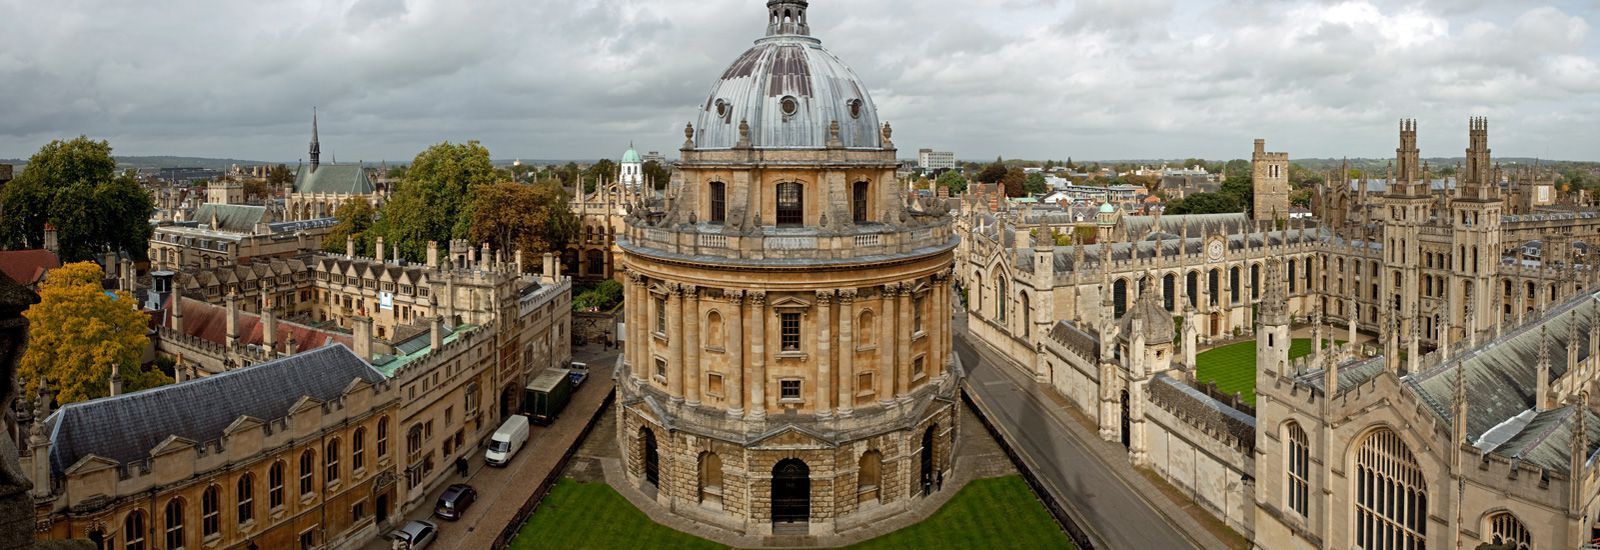 جامعة أكسفورد - دورات تدريبية مجانية عن بُعد في التدريب التقني - المدينة المنورة